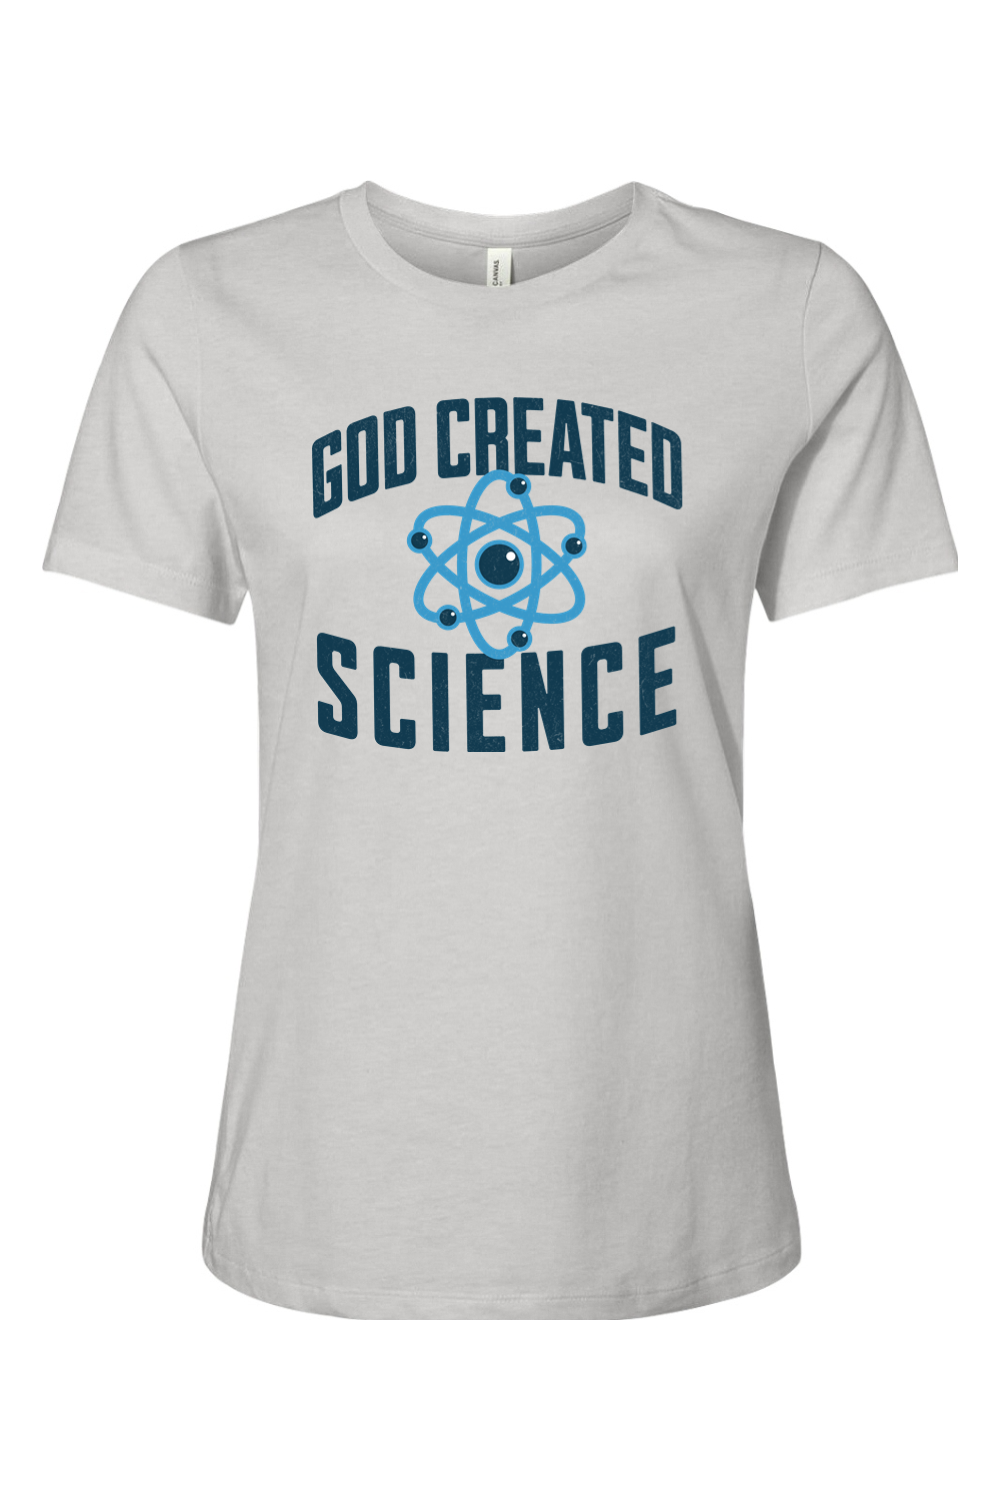 God Created Science - Ladies Tee